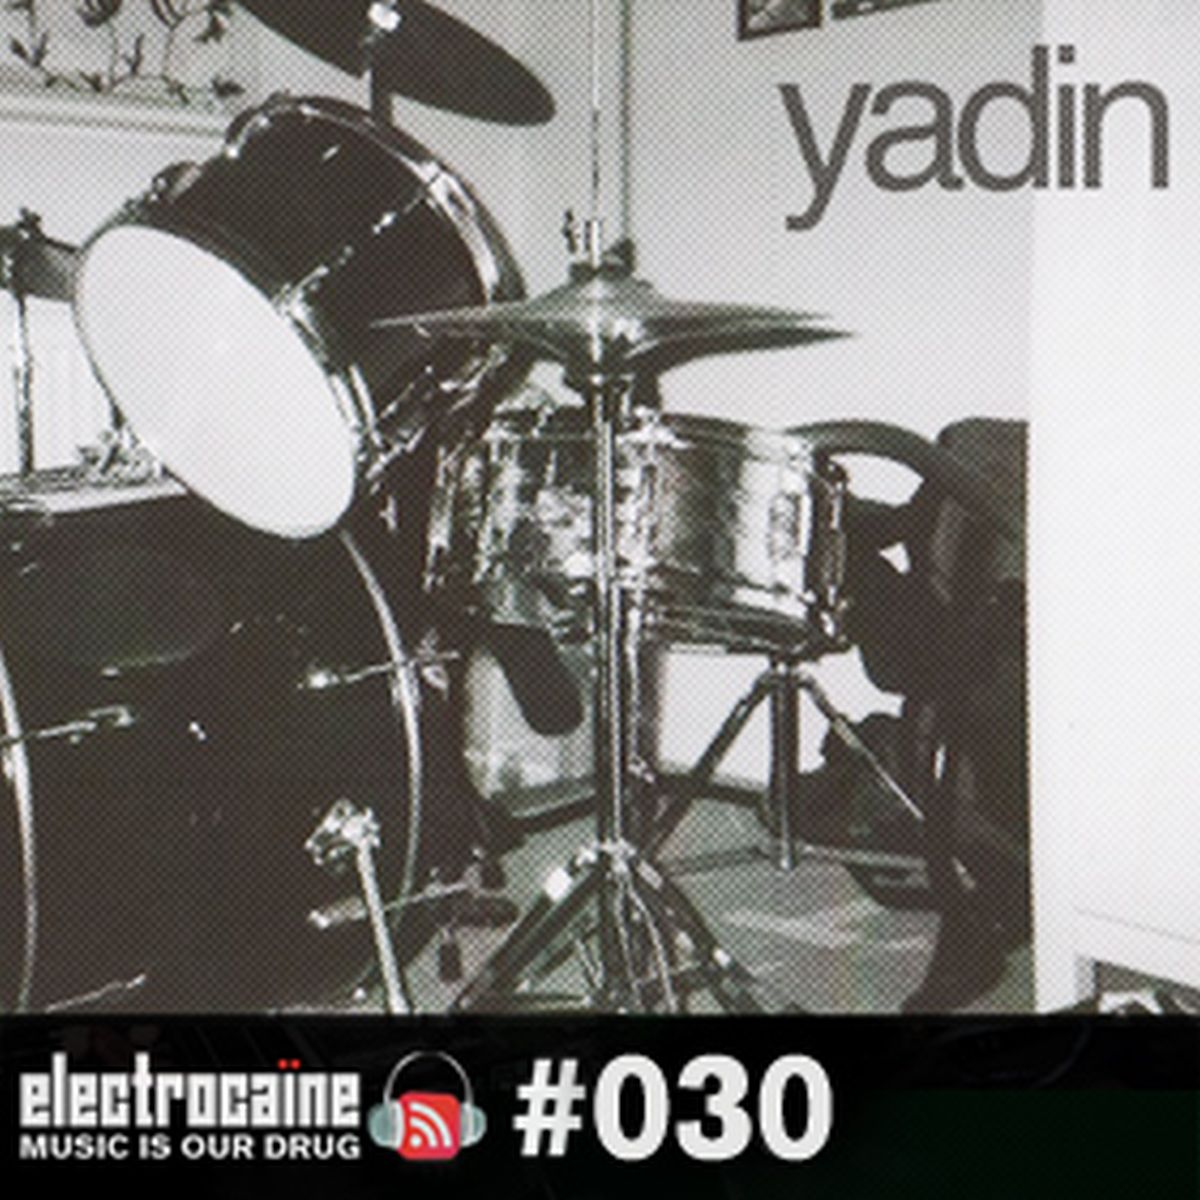 session #030 – Yadin (SG)